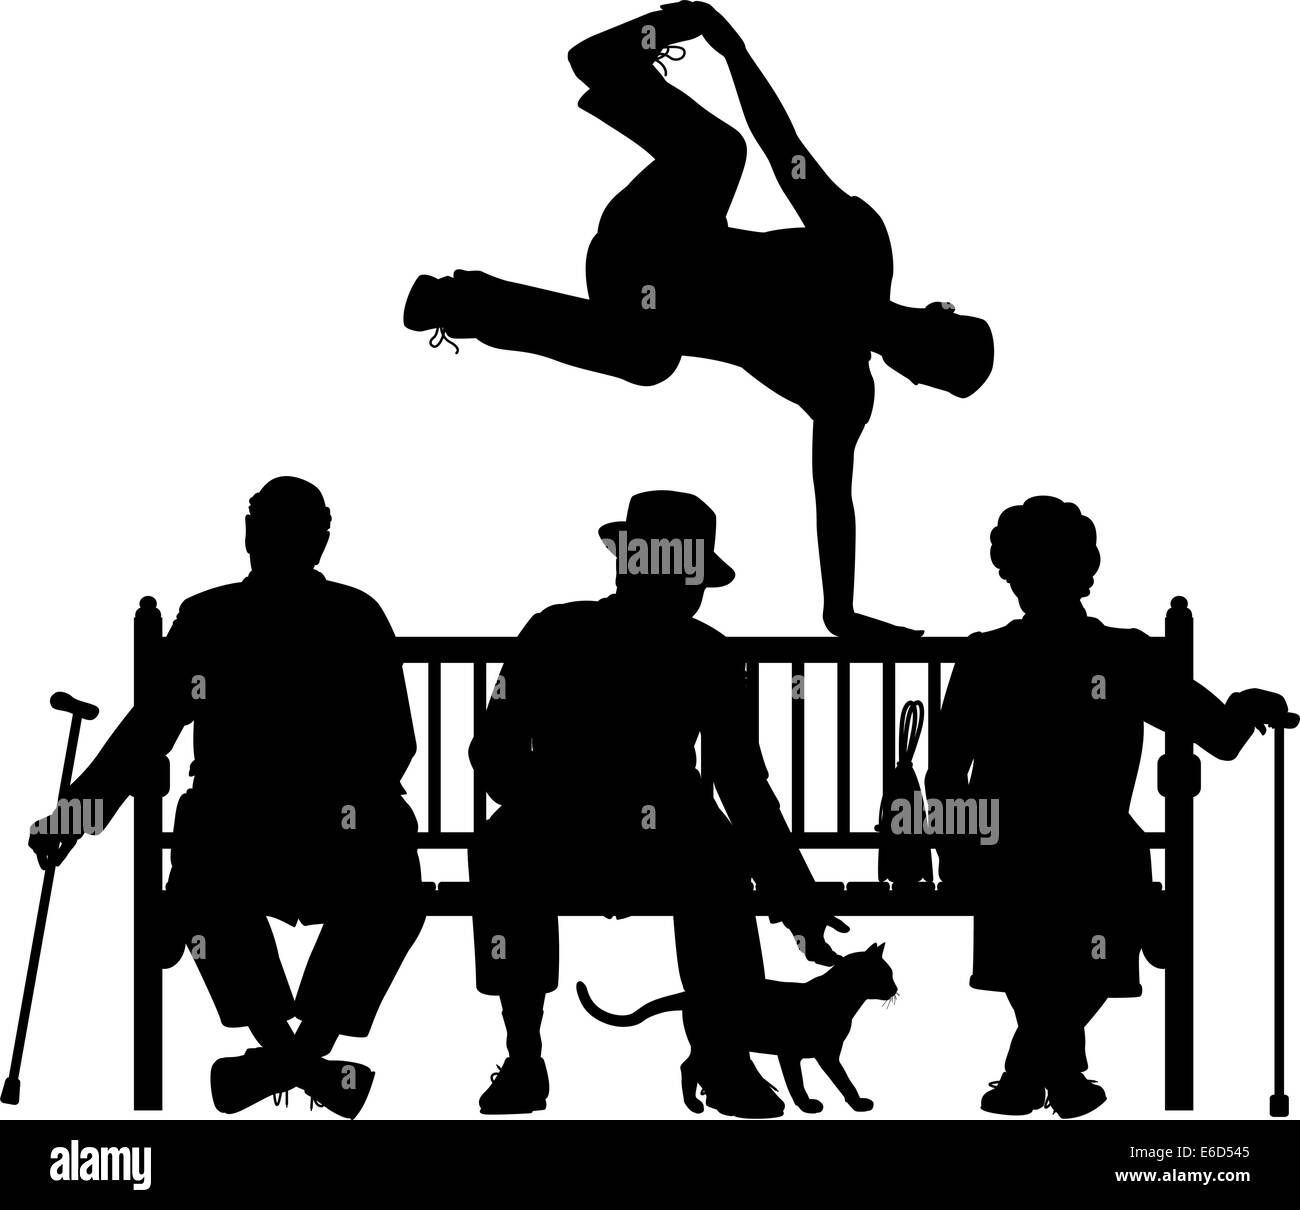 Bearbeitbares Vektor Silhouette eines jungen Mannes Voltigieren über drei ältere Menschen auf einer Parkbank mit allen Elementen als separate Zielen Stock Vektor